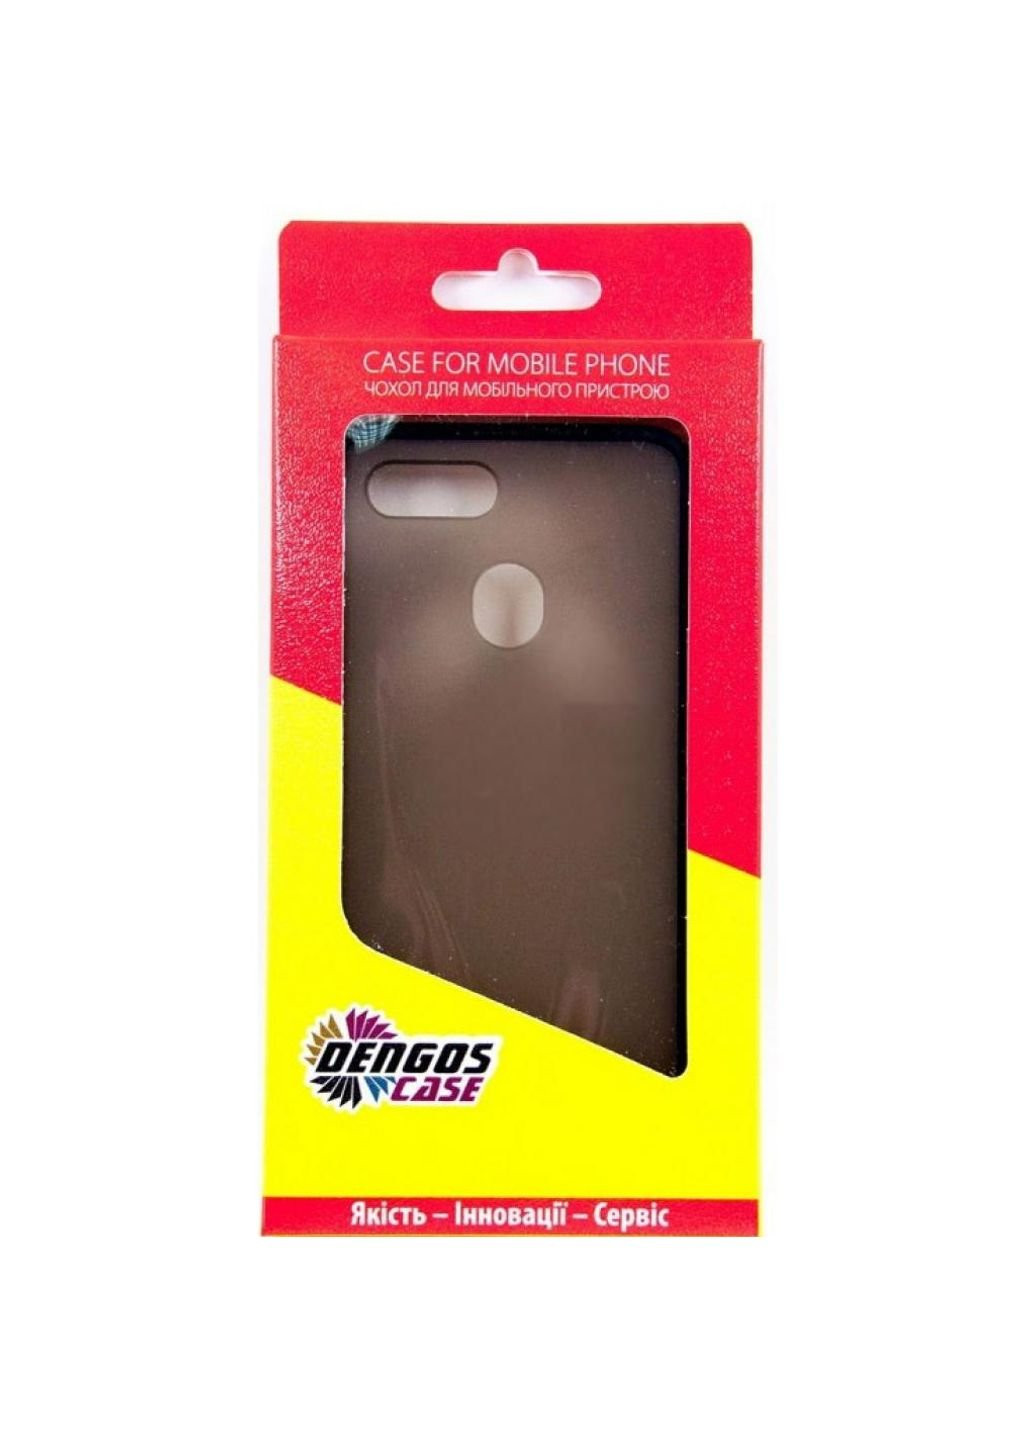 Чехол для мобильного телефона Oppo A5s (black) (DG-TPU-MATT-36) DENGOS (252572623)